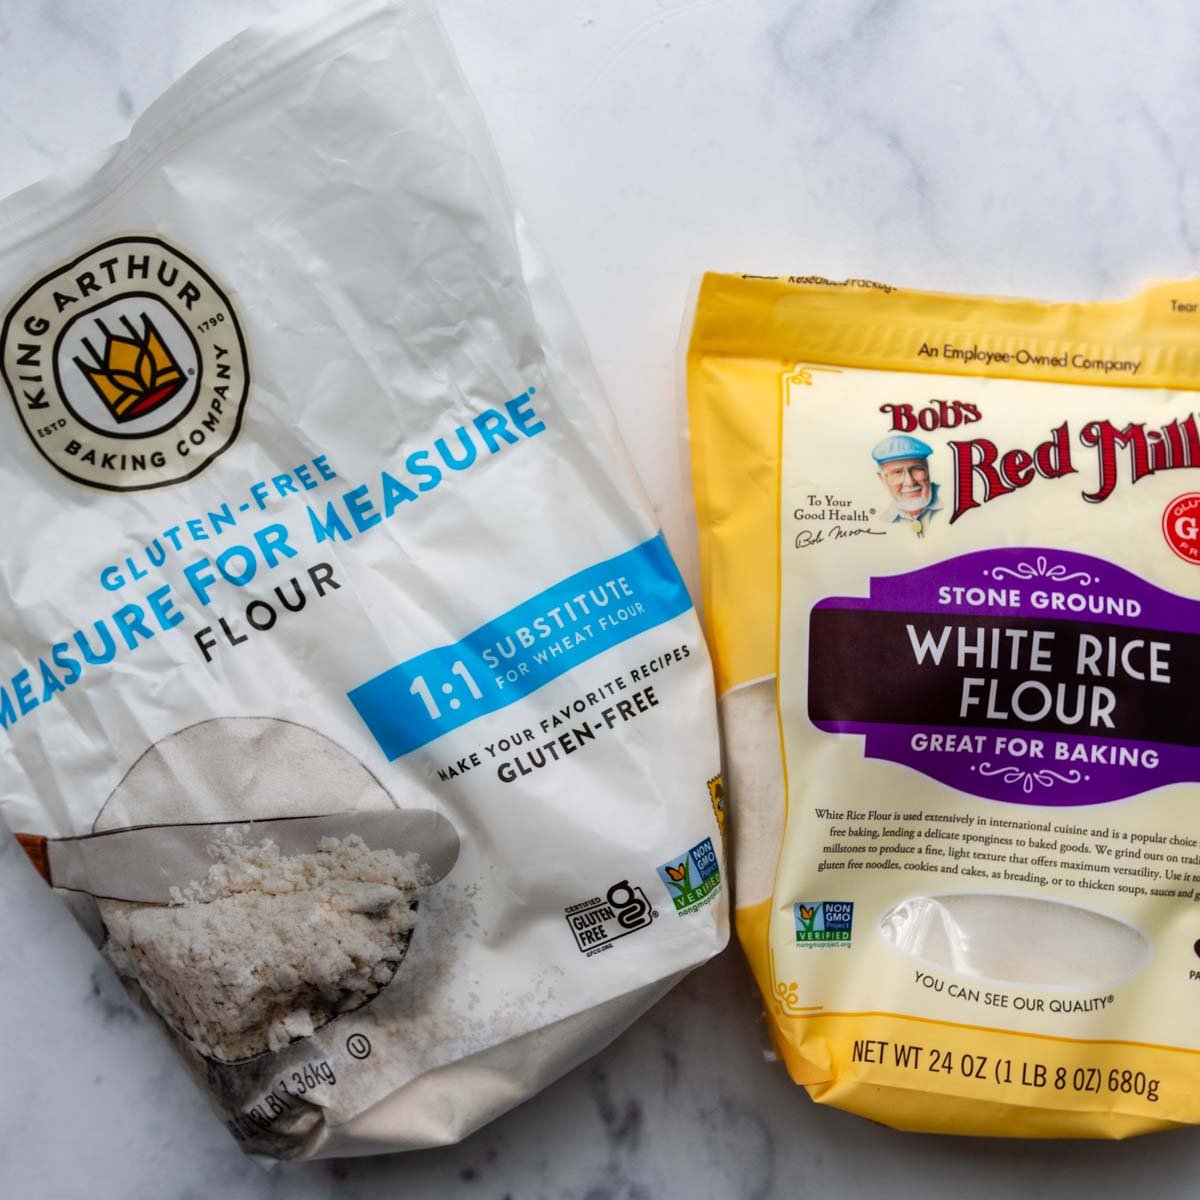 king arthur flour and white rice flour on a marble surface.